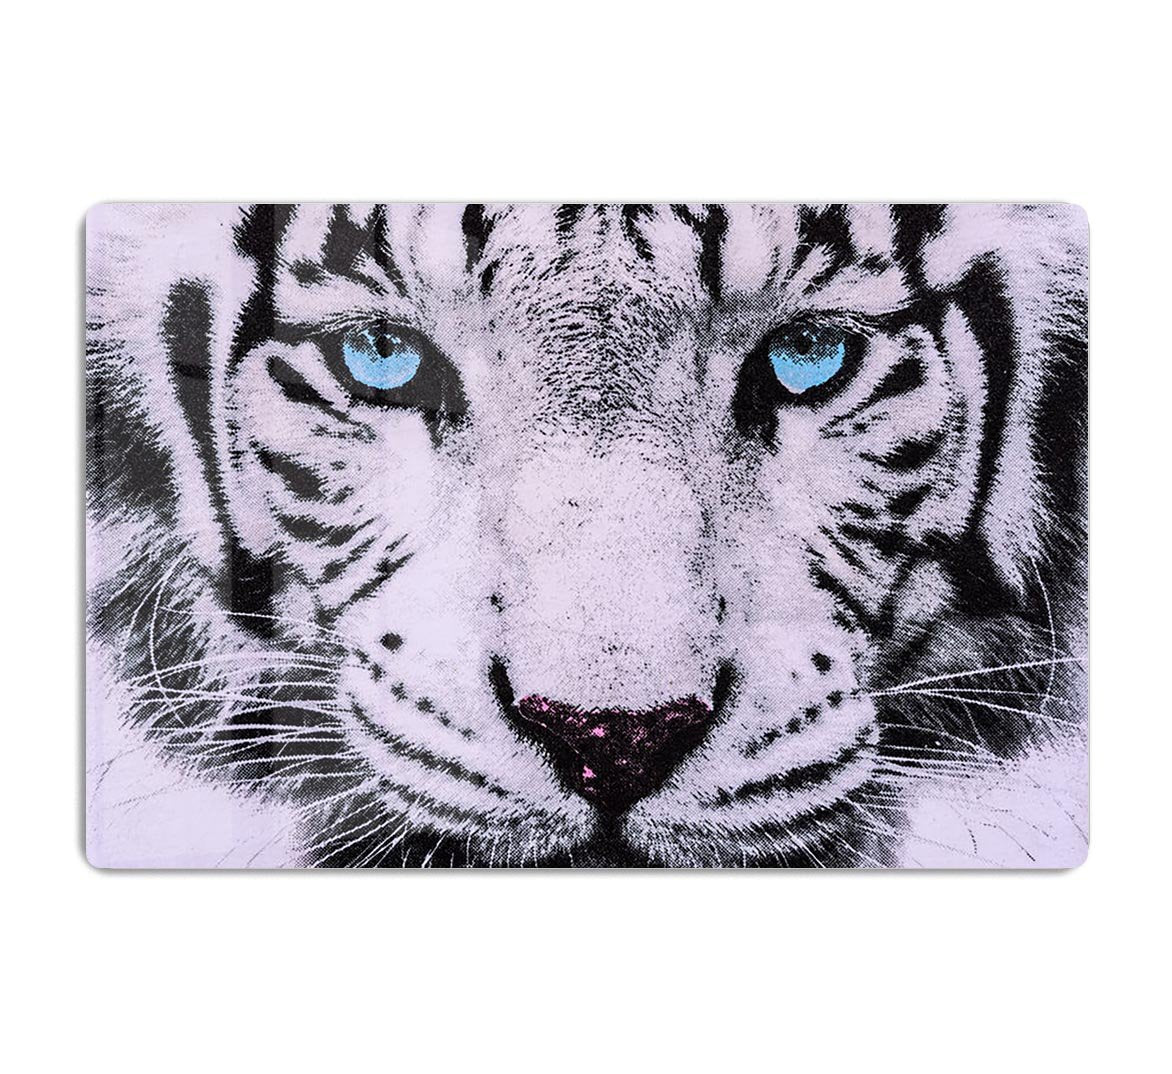 White Tiger Face HD Metal Print - Canvas Art Rocks - 1